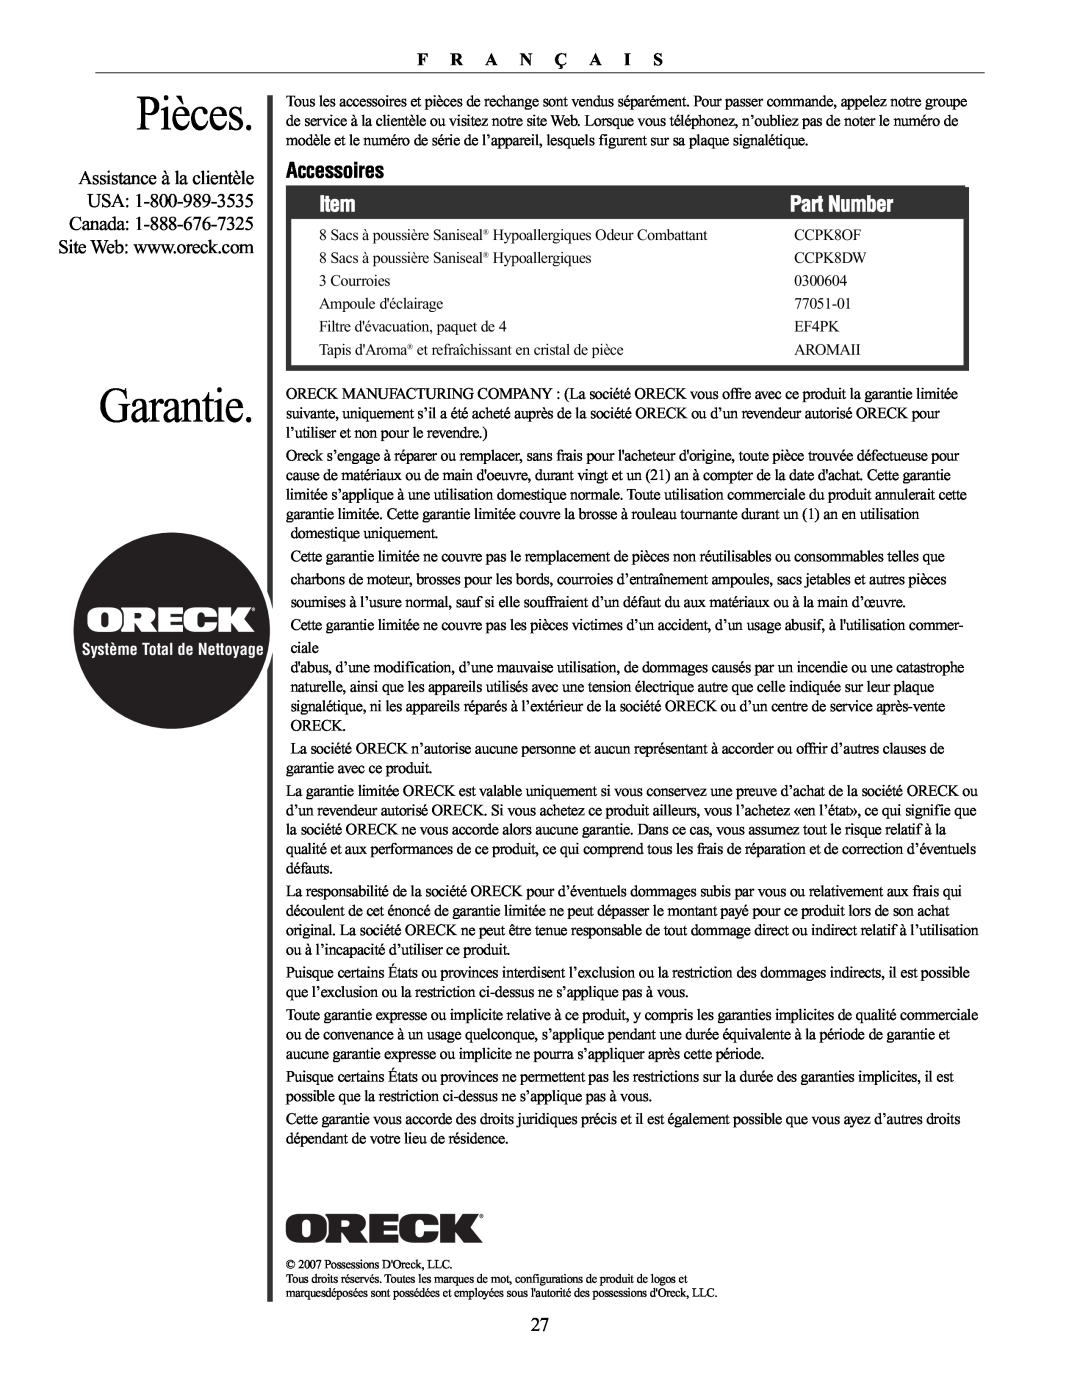 Oreck XL21 manual Pièces, Garantie, Accessoires, Assistance à la clientèle, Usa, Canada, F R A N Ç A I S, Part Number 